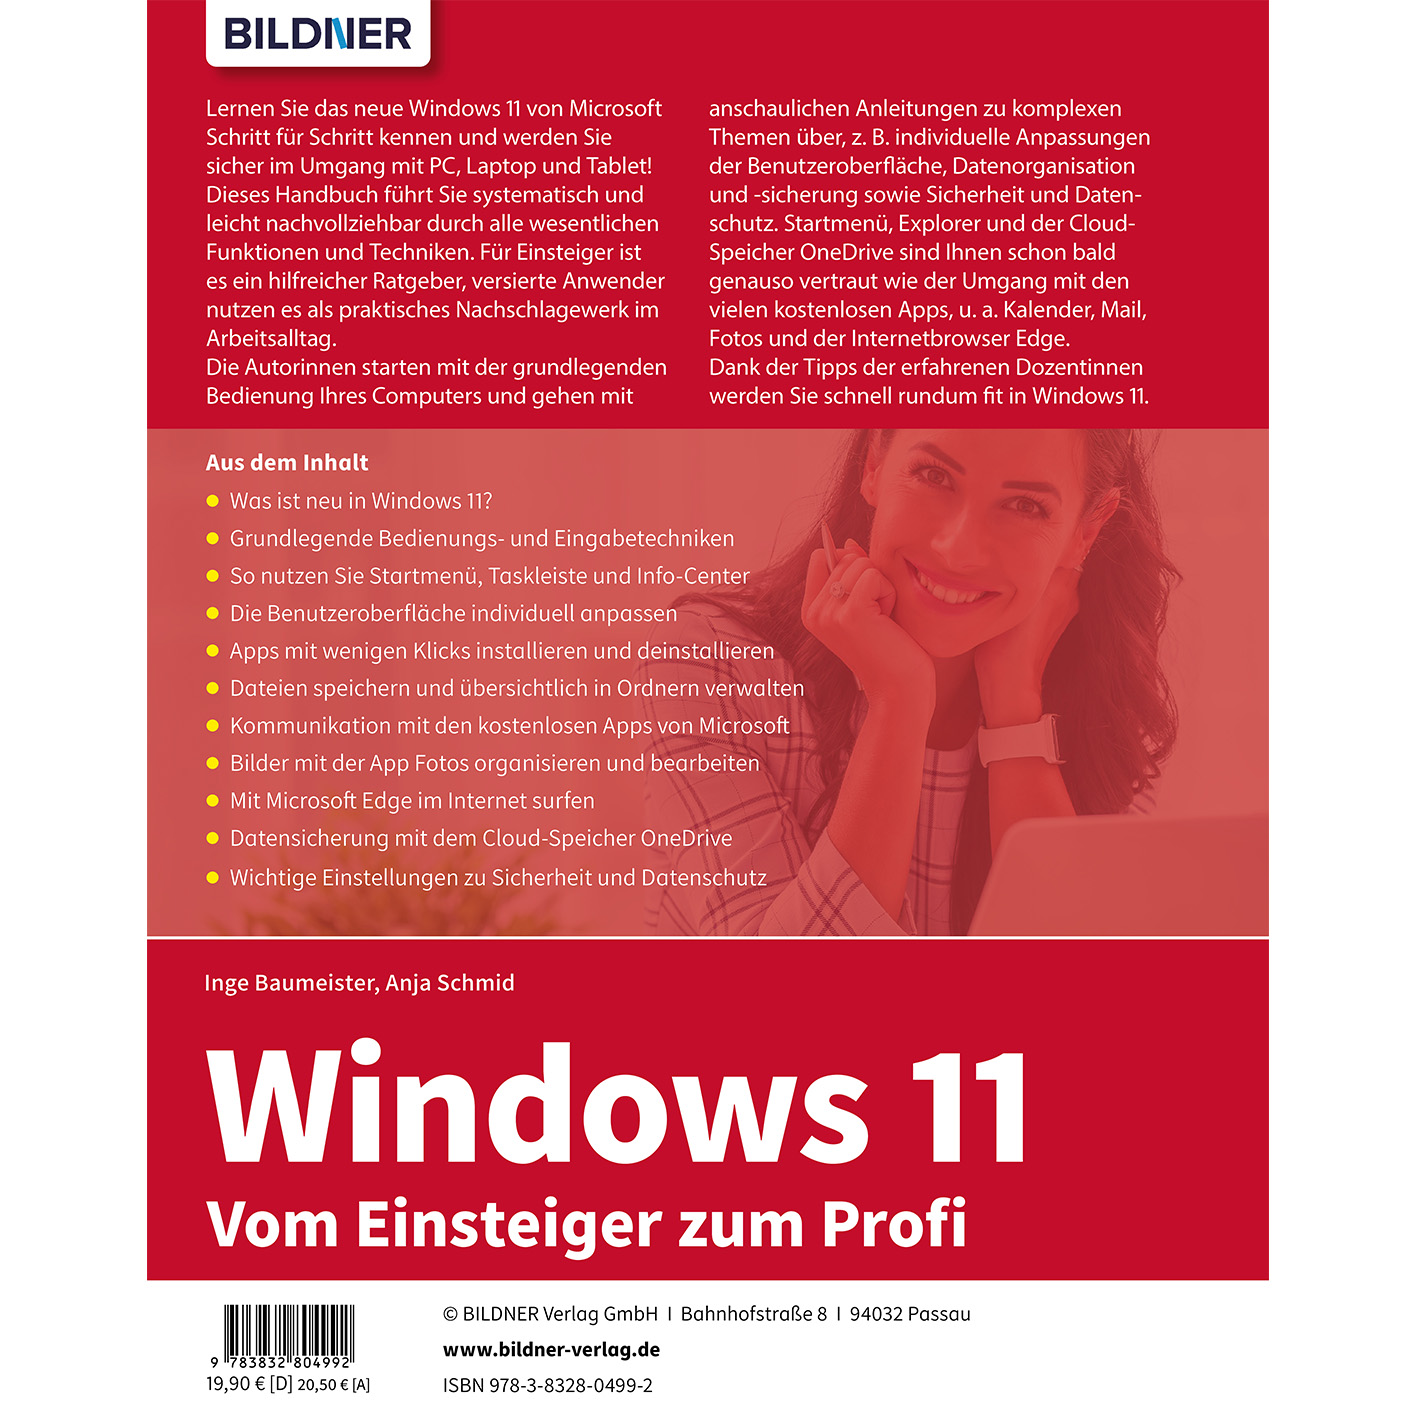 Windows 11 - Vom Profi Einsteiger zum